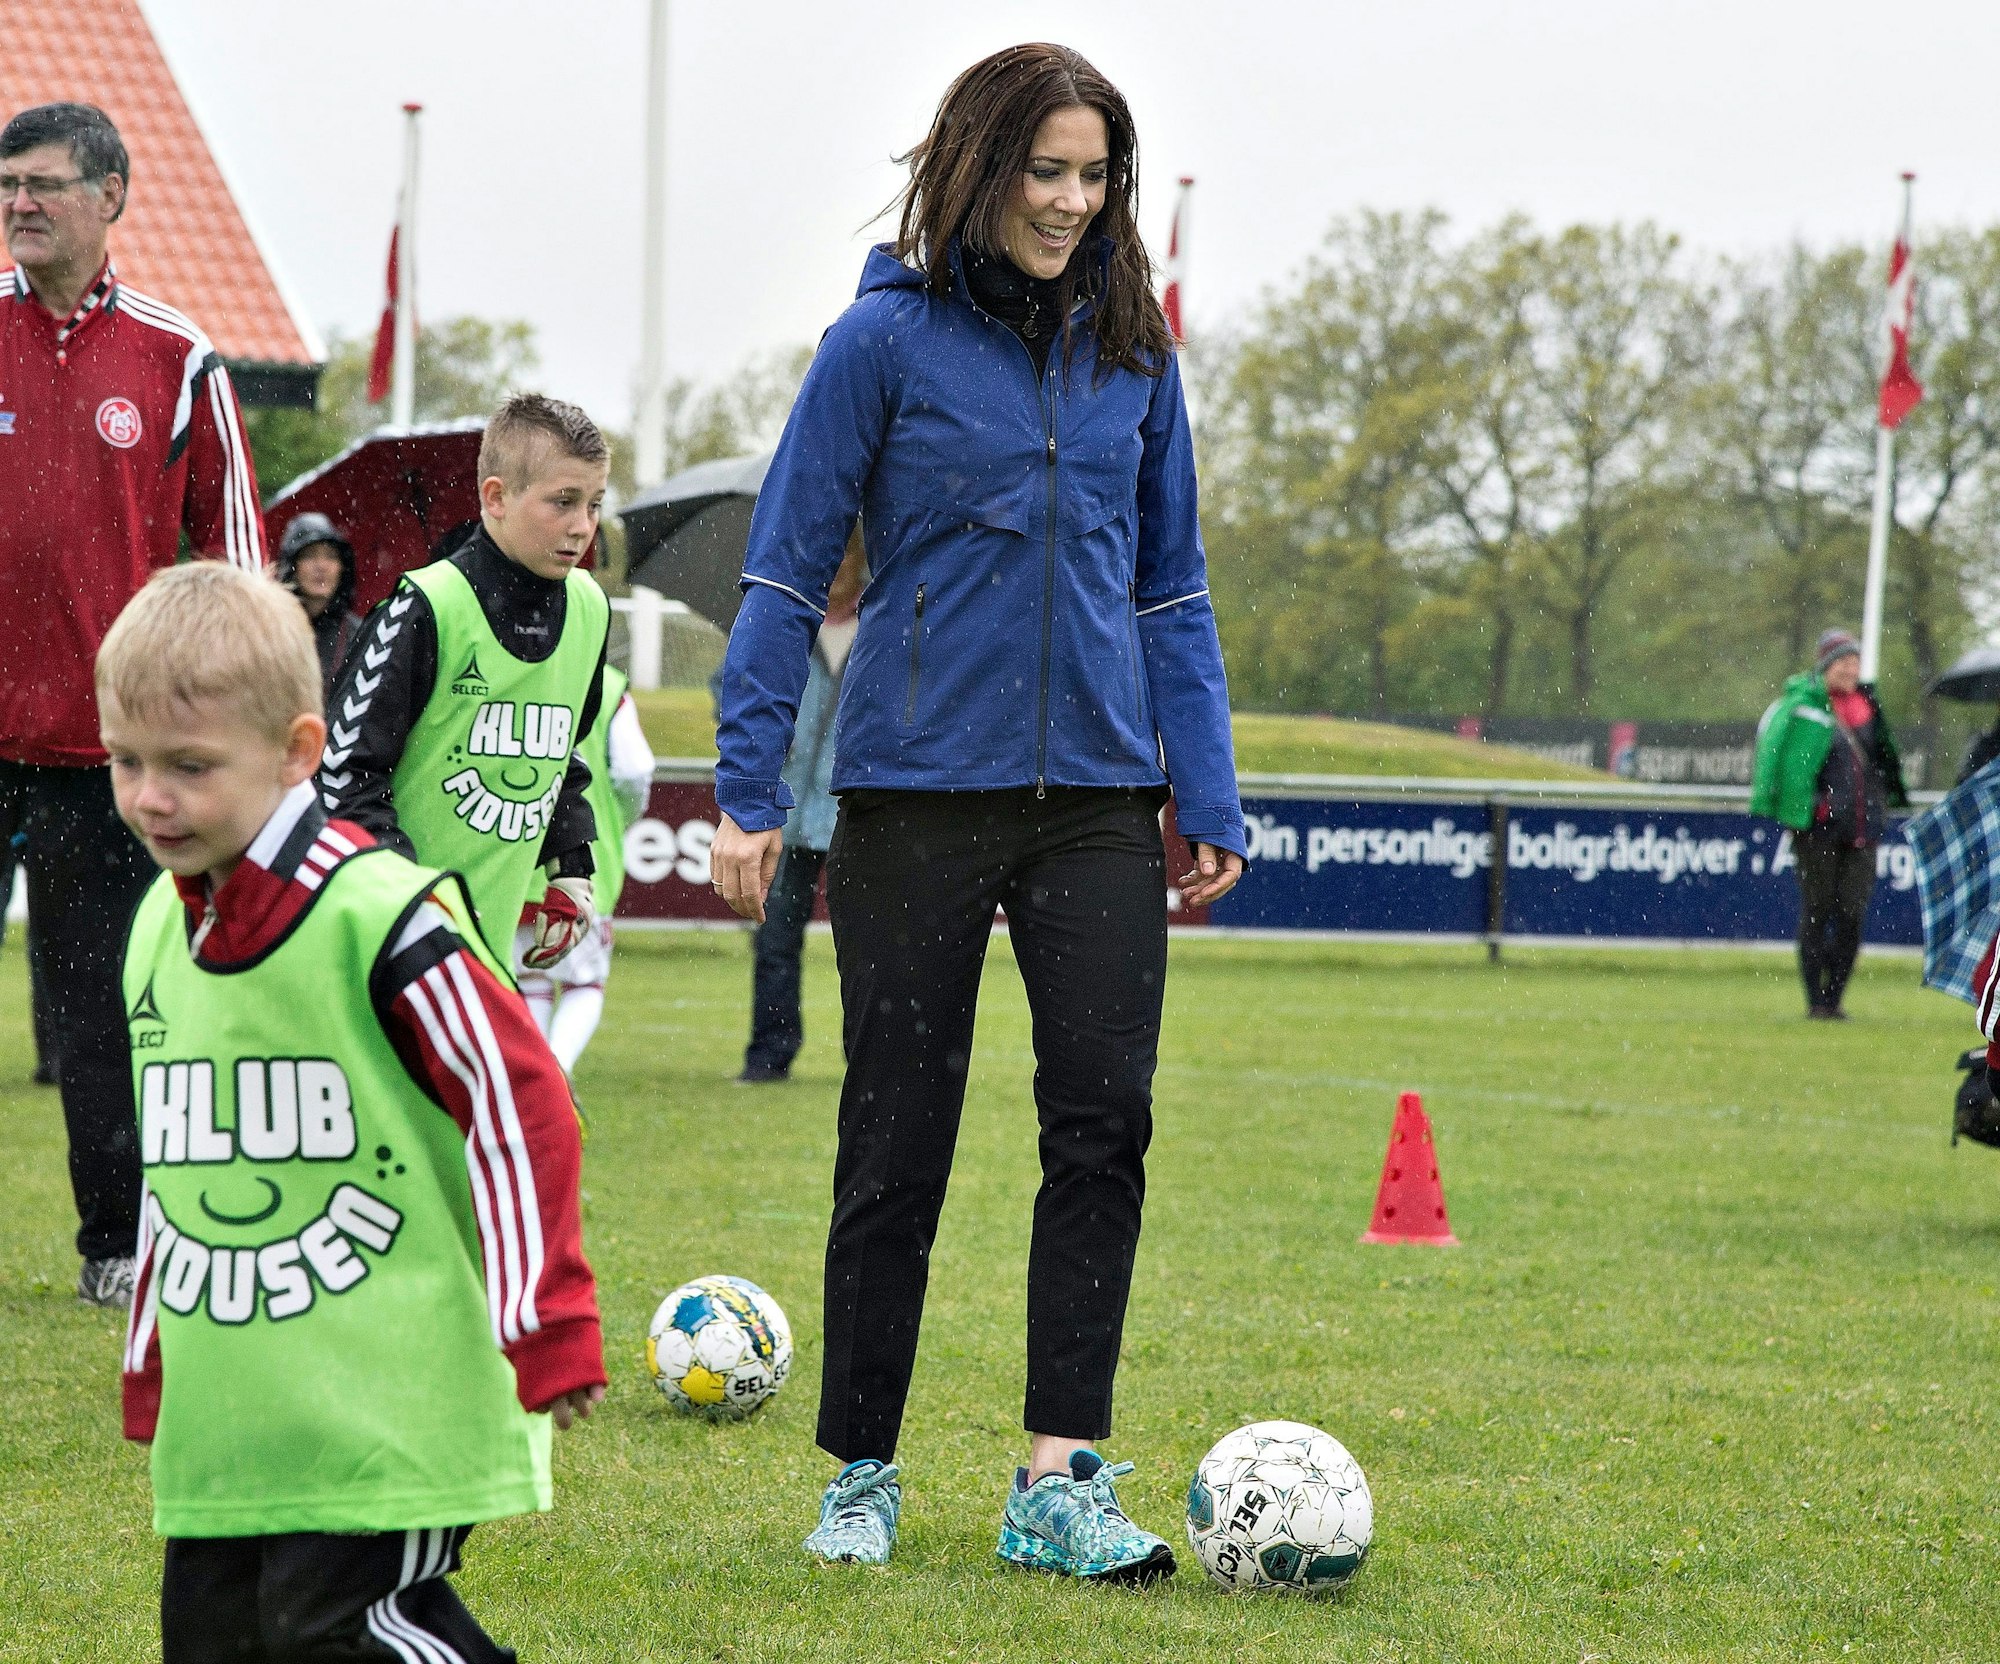 Dänemarks Kronprinzessin Mary beim Fußballspiel mit Kindern im Mai 2015.